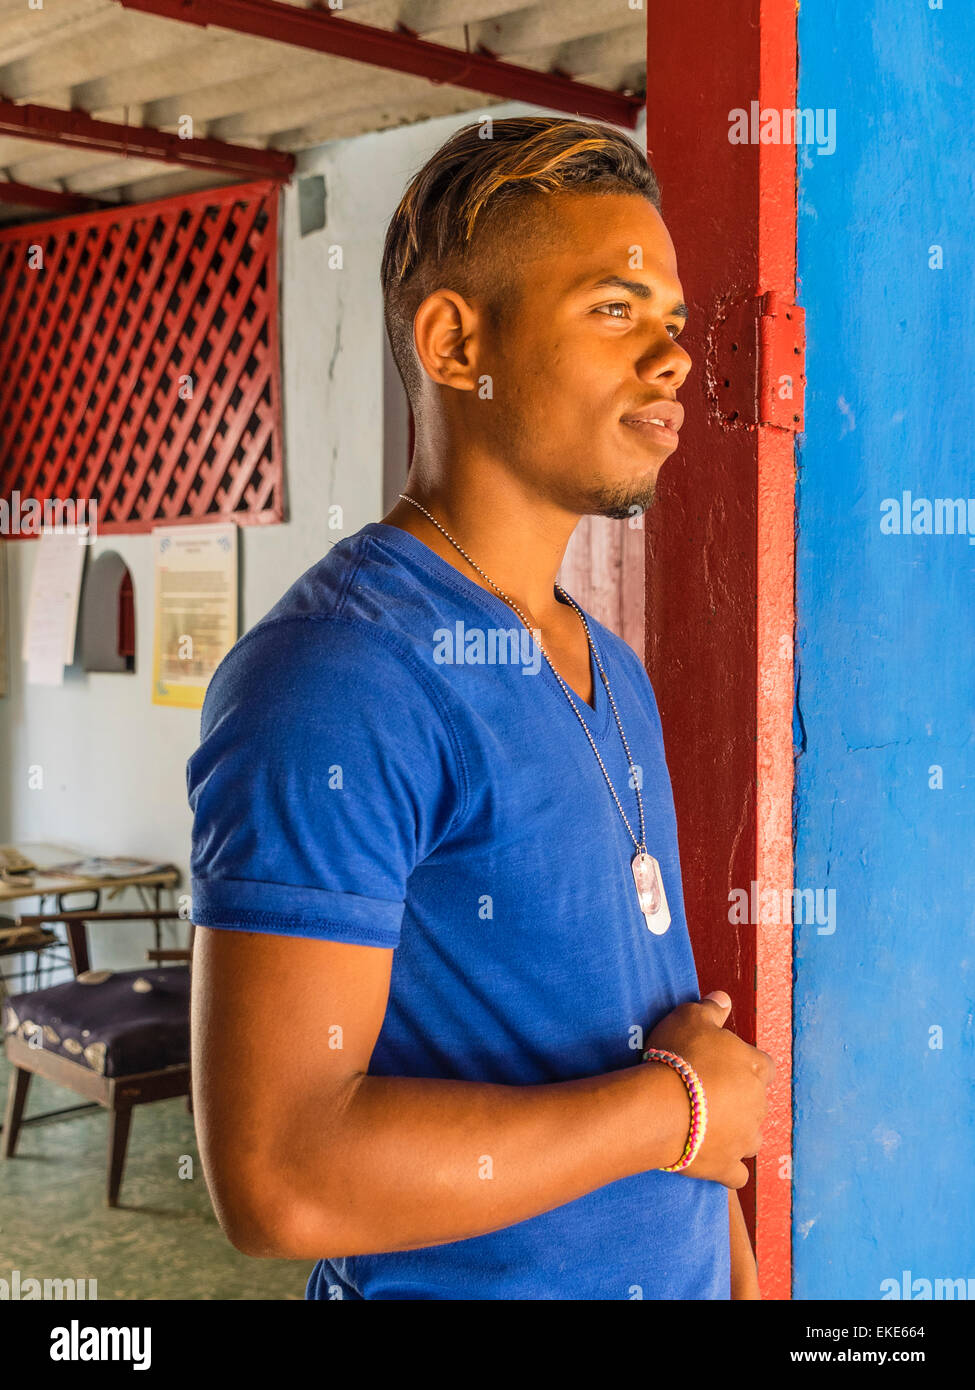 Eine zwanzig steht etwas Afro-kubanischen Mann in eine sehr bunte rote Tür mit einer blauen Wand, die die Farbe seines Hemdes entspricht. Stockfoto